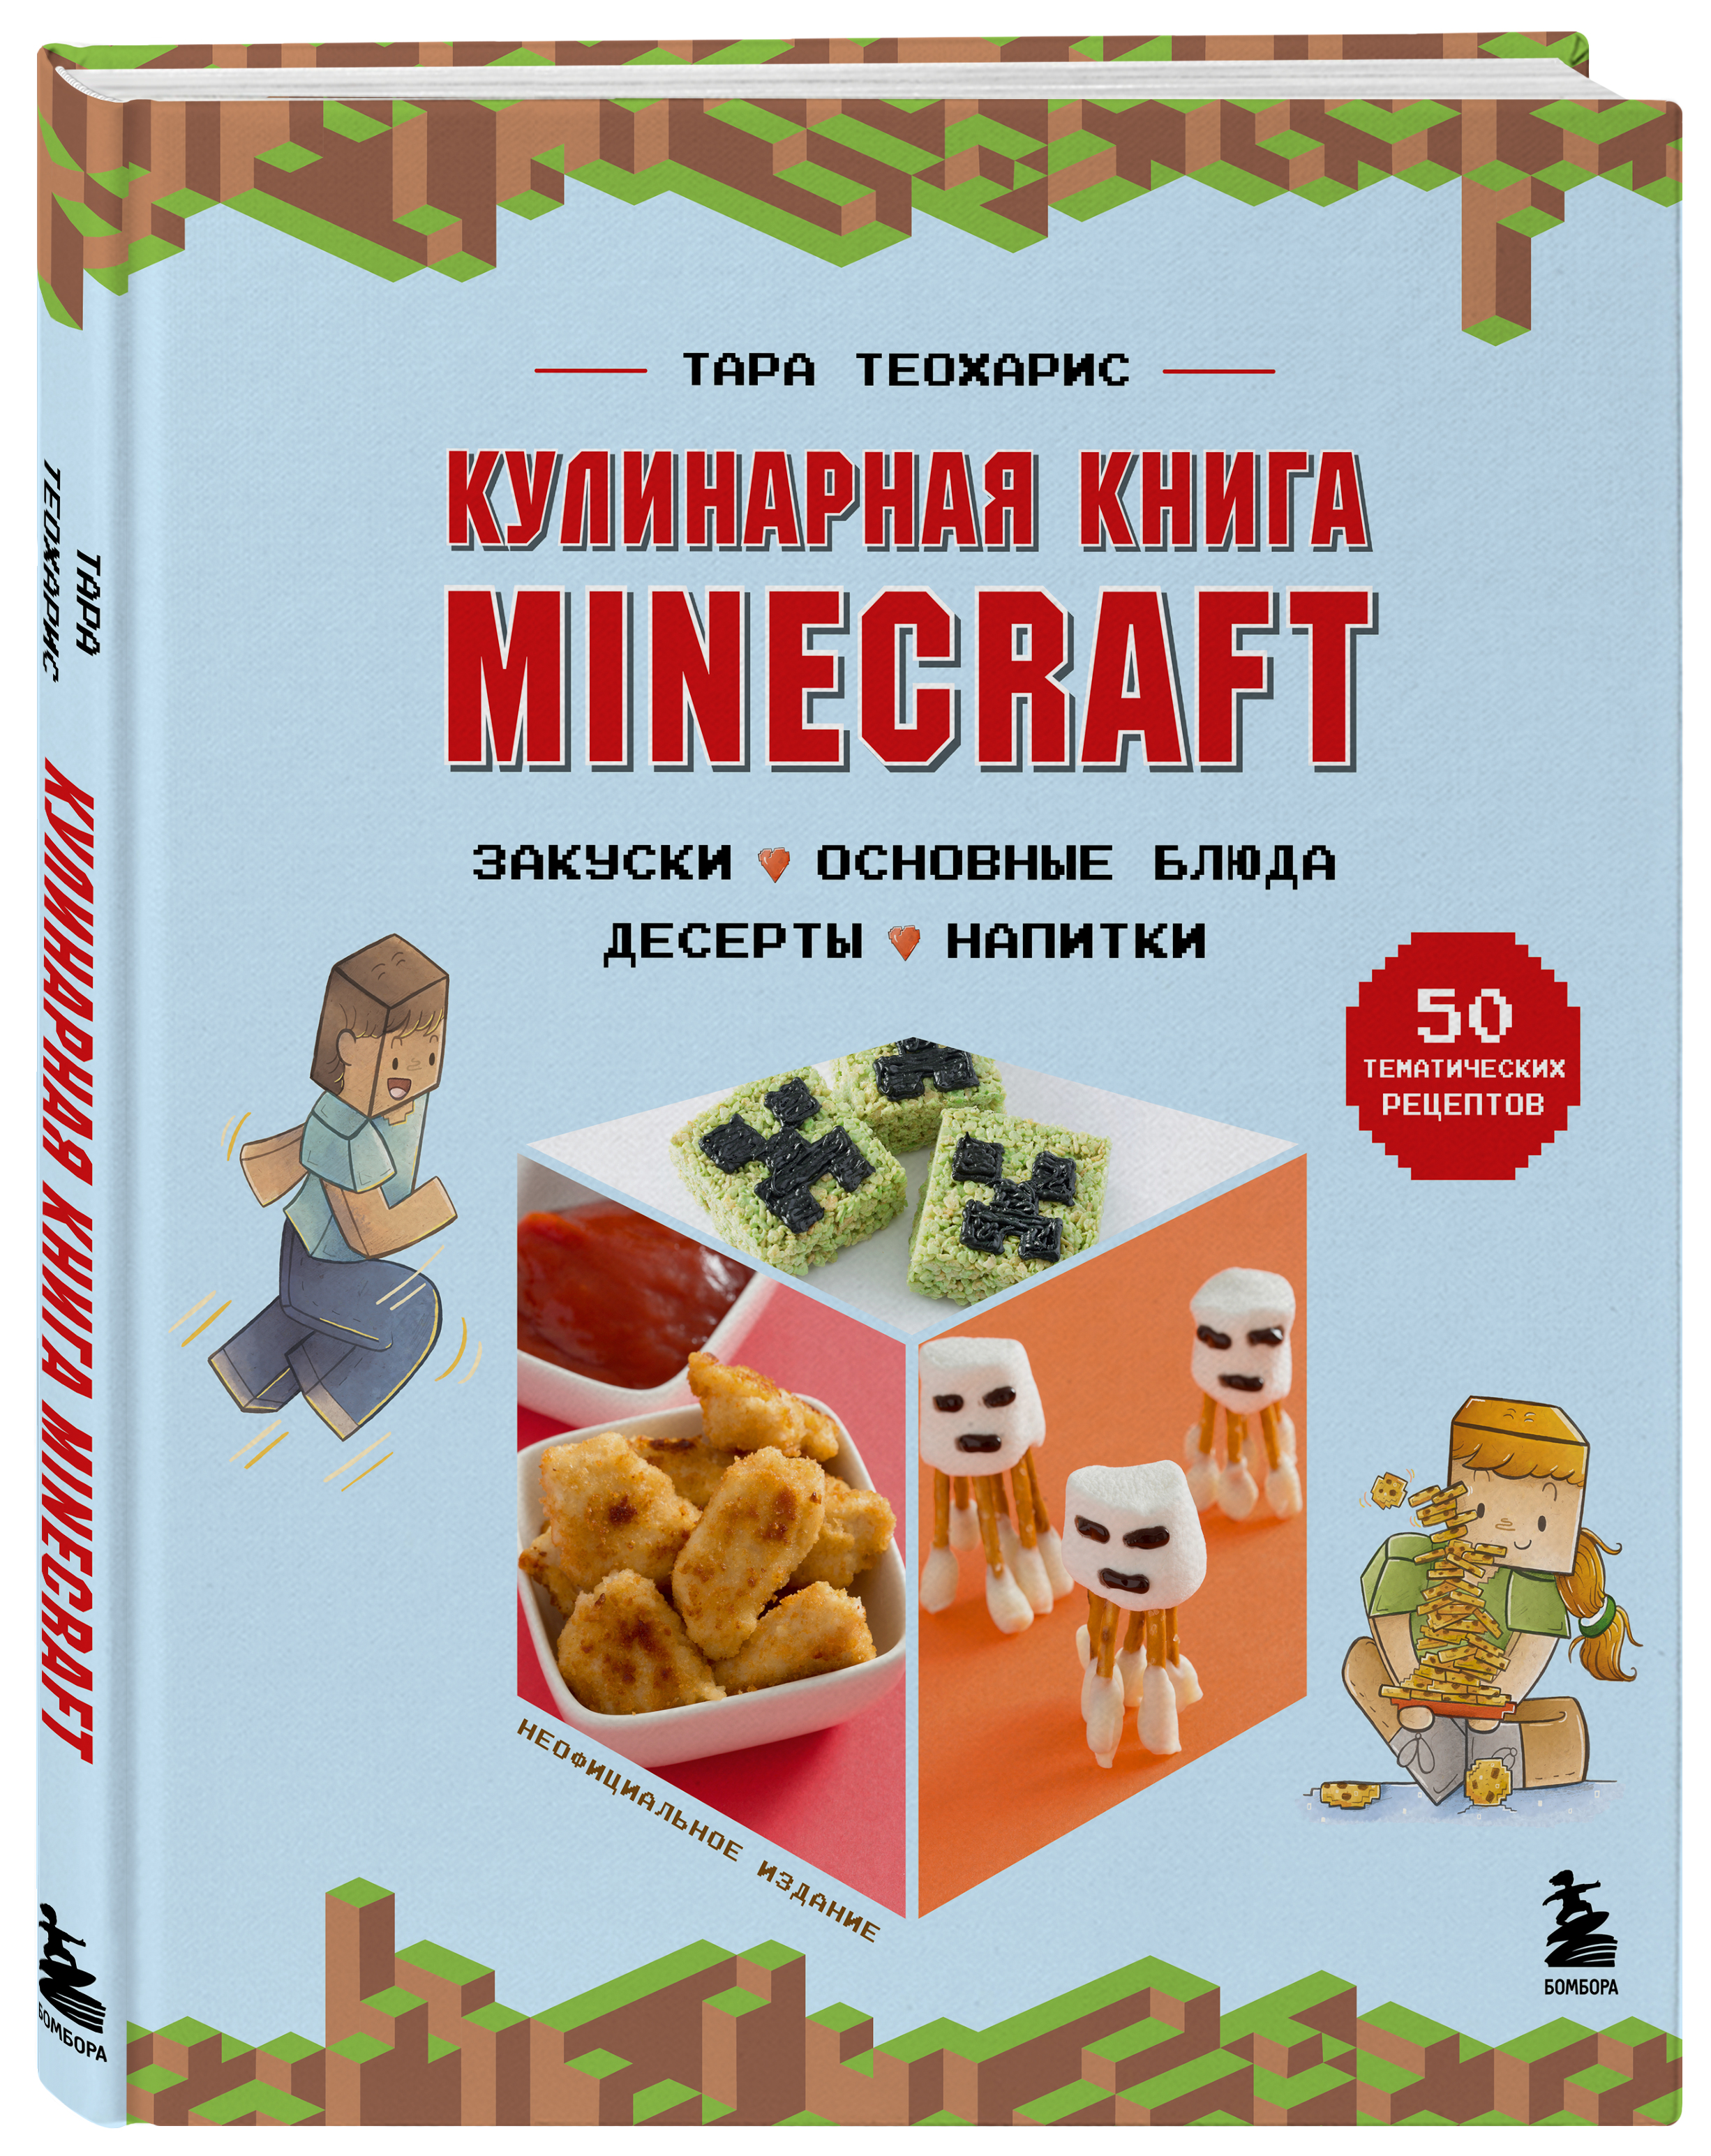 Тара Теохарис Кулинарная книга Minecraft: 50 рецептов, вдохновленных культовой компьютерной игрой